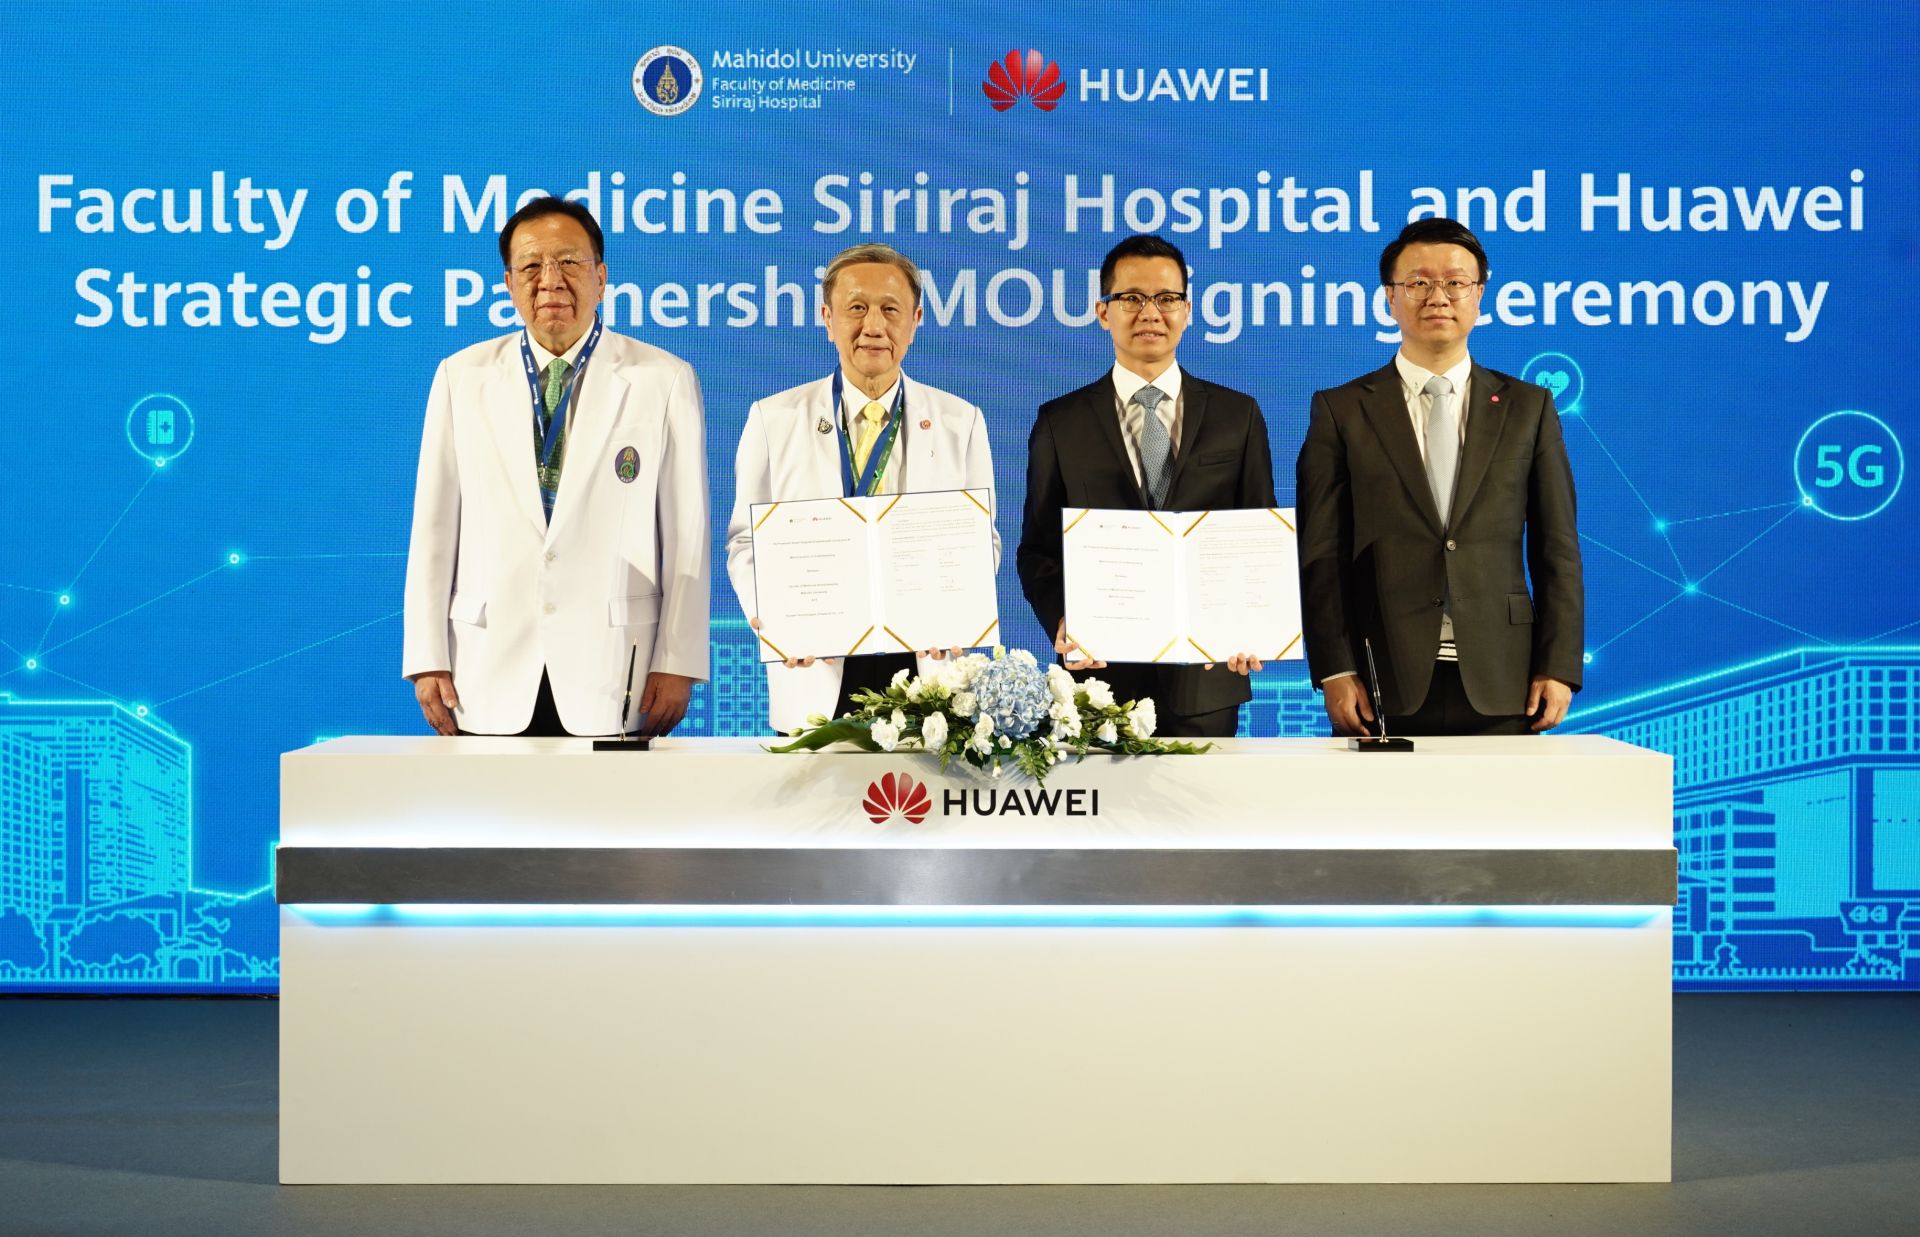 หัวเว่ย จับมือ ศิริราช ลงนาม MOU พัฒนาโรงพยาบาลอัจฉริยะ 5G ยกระดับบริการสาธารณสุขด้วย Cloud และ AI